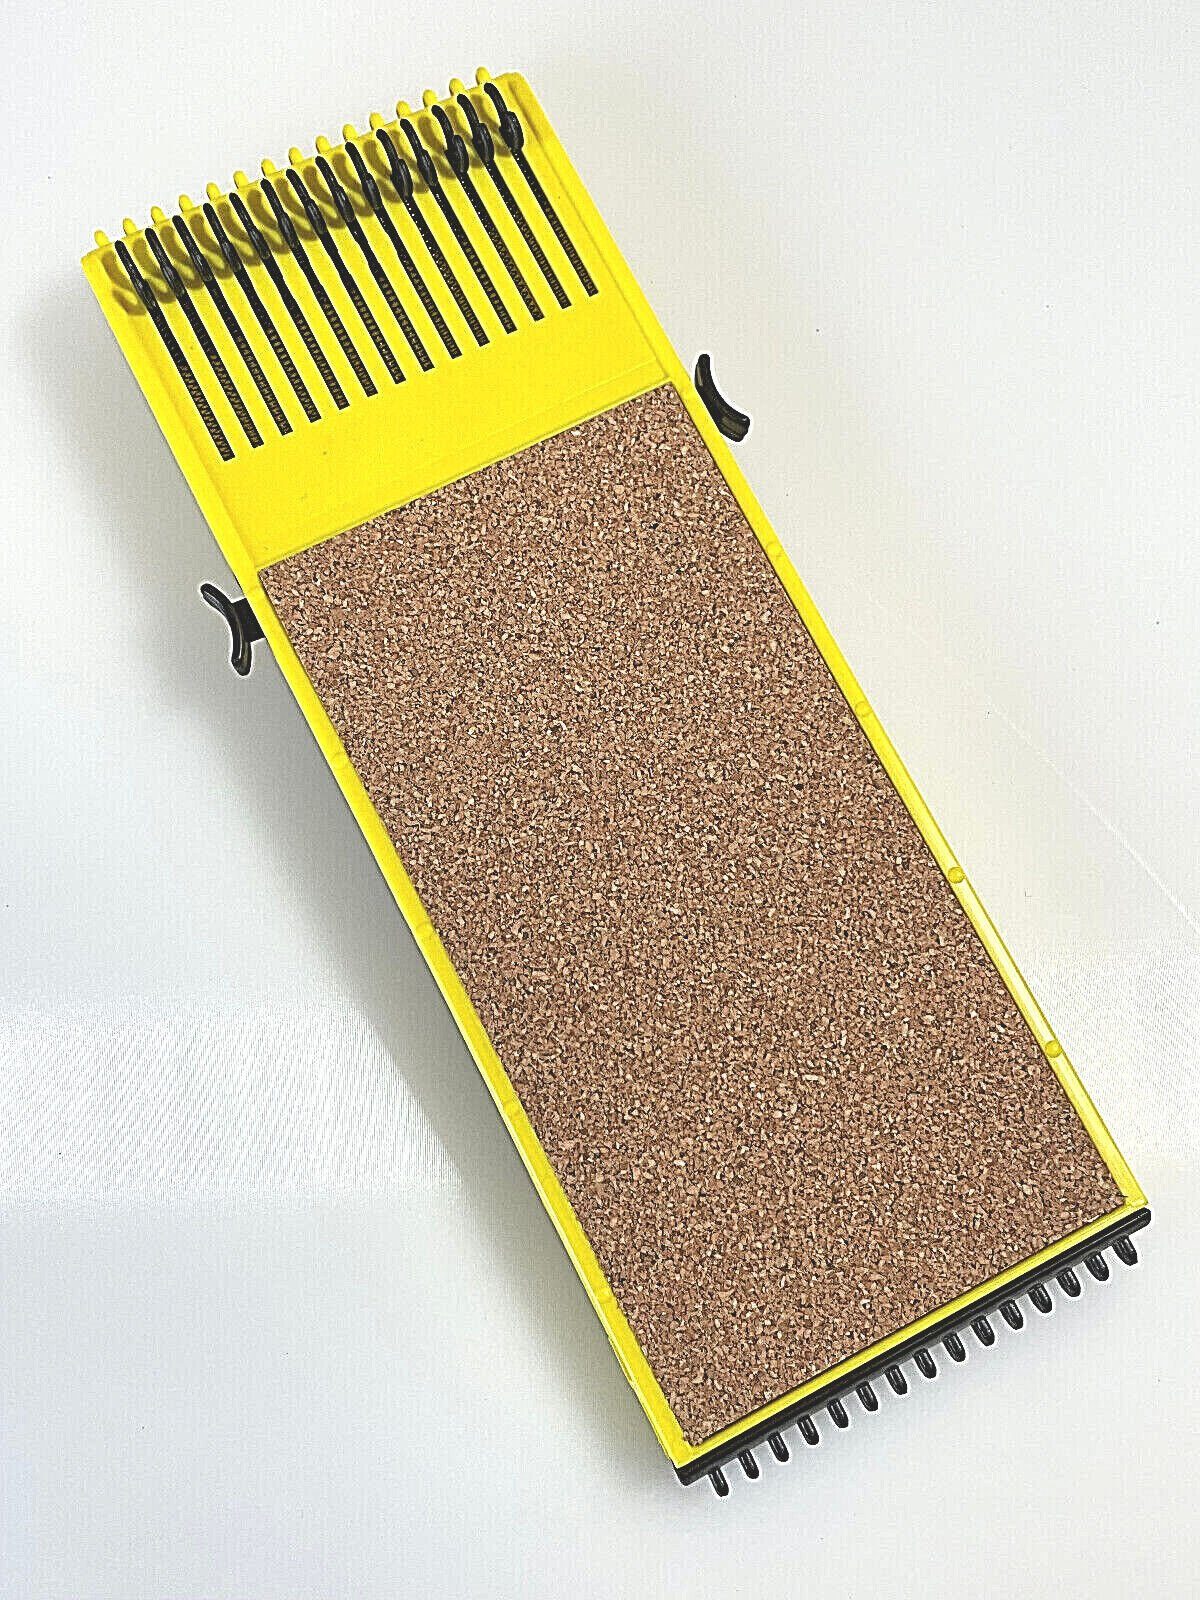 Vorfach Anplast DeLuxe RIG-HOLDER Spanner Aufwickler Verstellbarer Angelschnurwickler Gelb-schwarz Kork